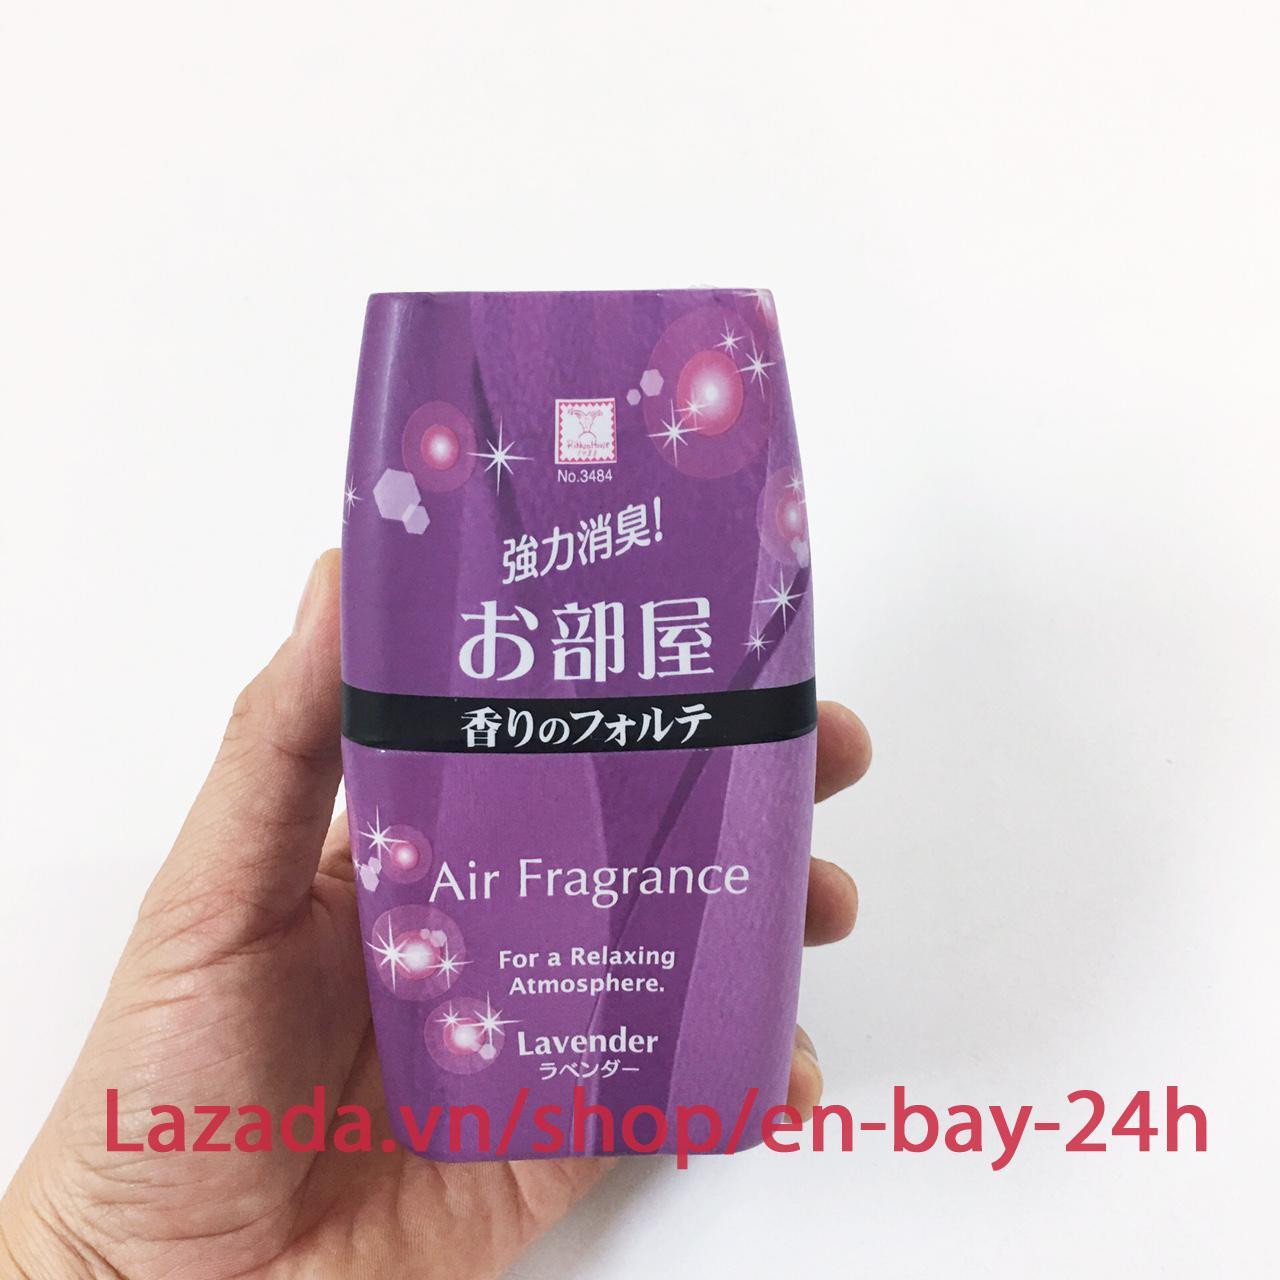 Hộp thơm phòng hương Lavender 200ml nhập khẩu Nhật Bản